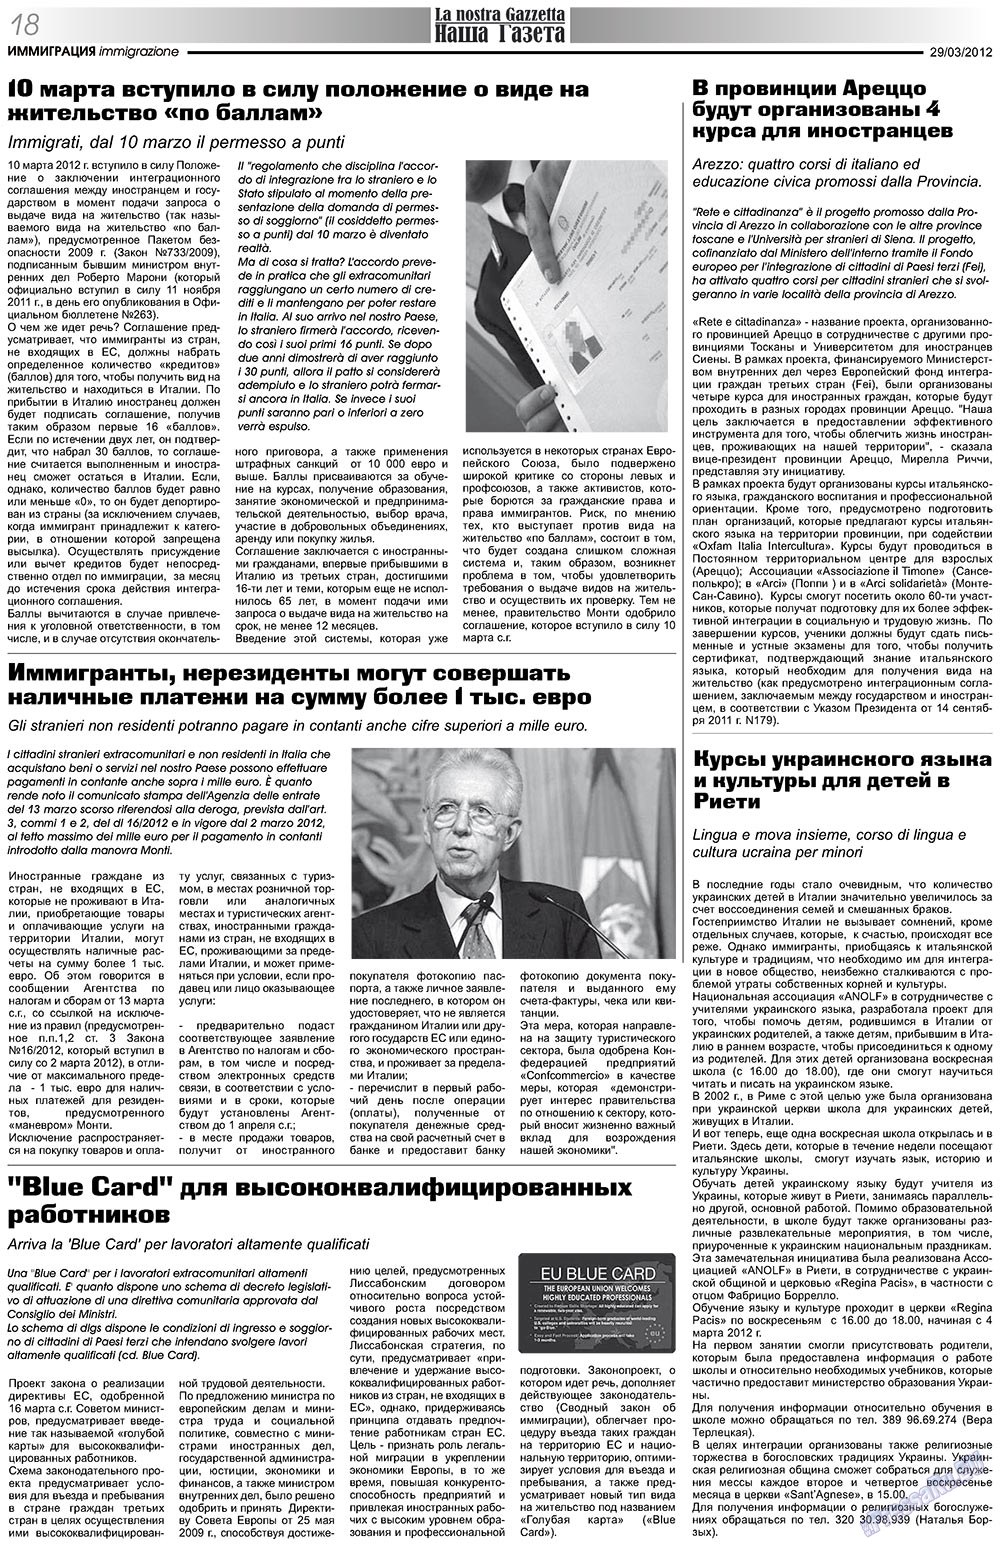 Наша Газета Италия, газета. 2012 №153 стр.18